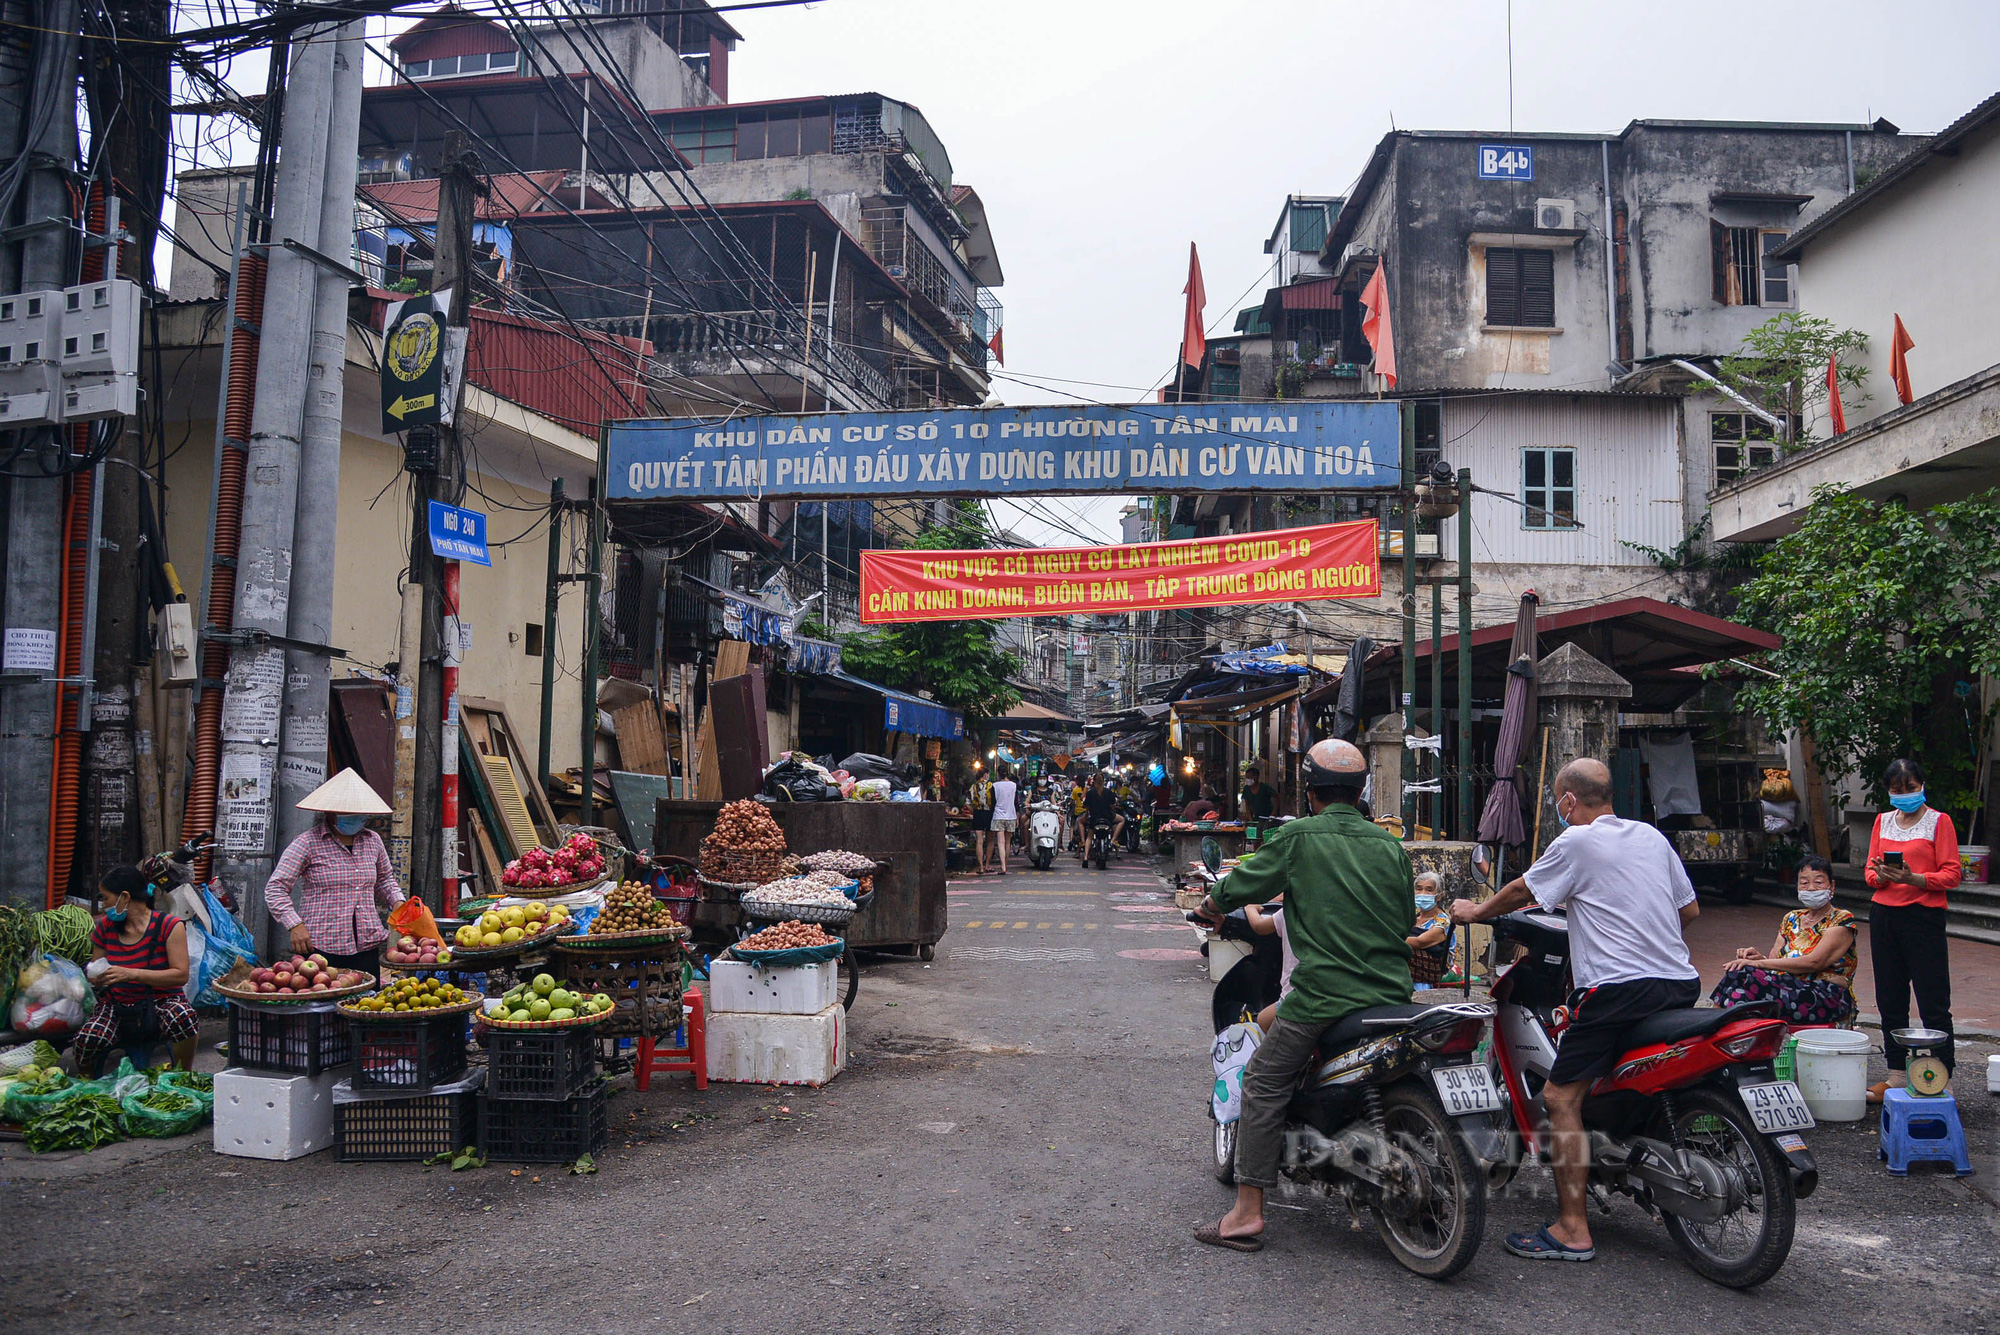 Hà Nội: Kẻ vạch, phân luồng giao thông trong chợ nhằm hạn chế tập trung đông người - Ảnh 1.